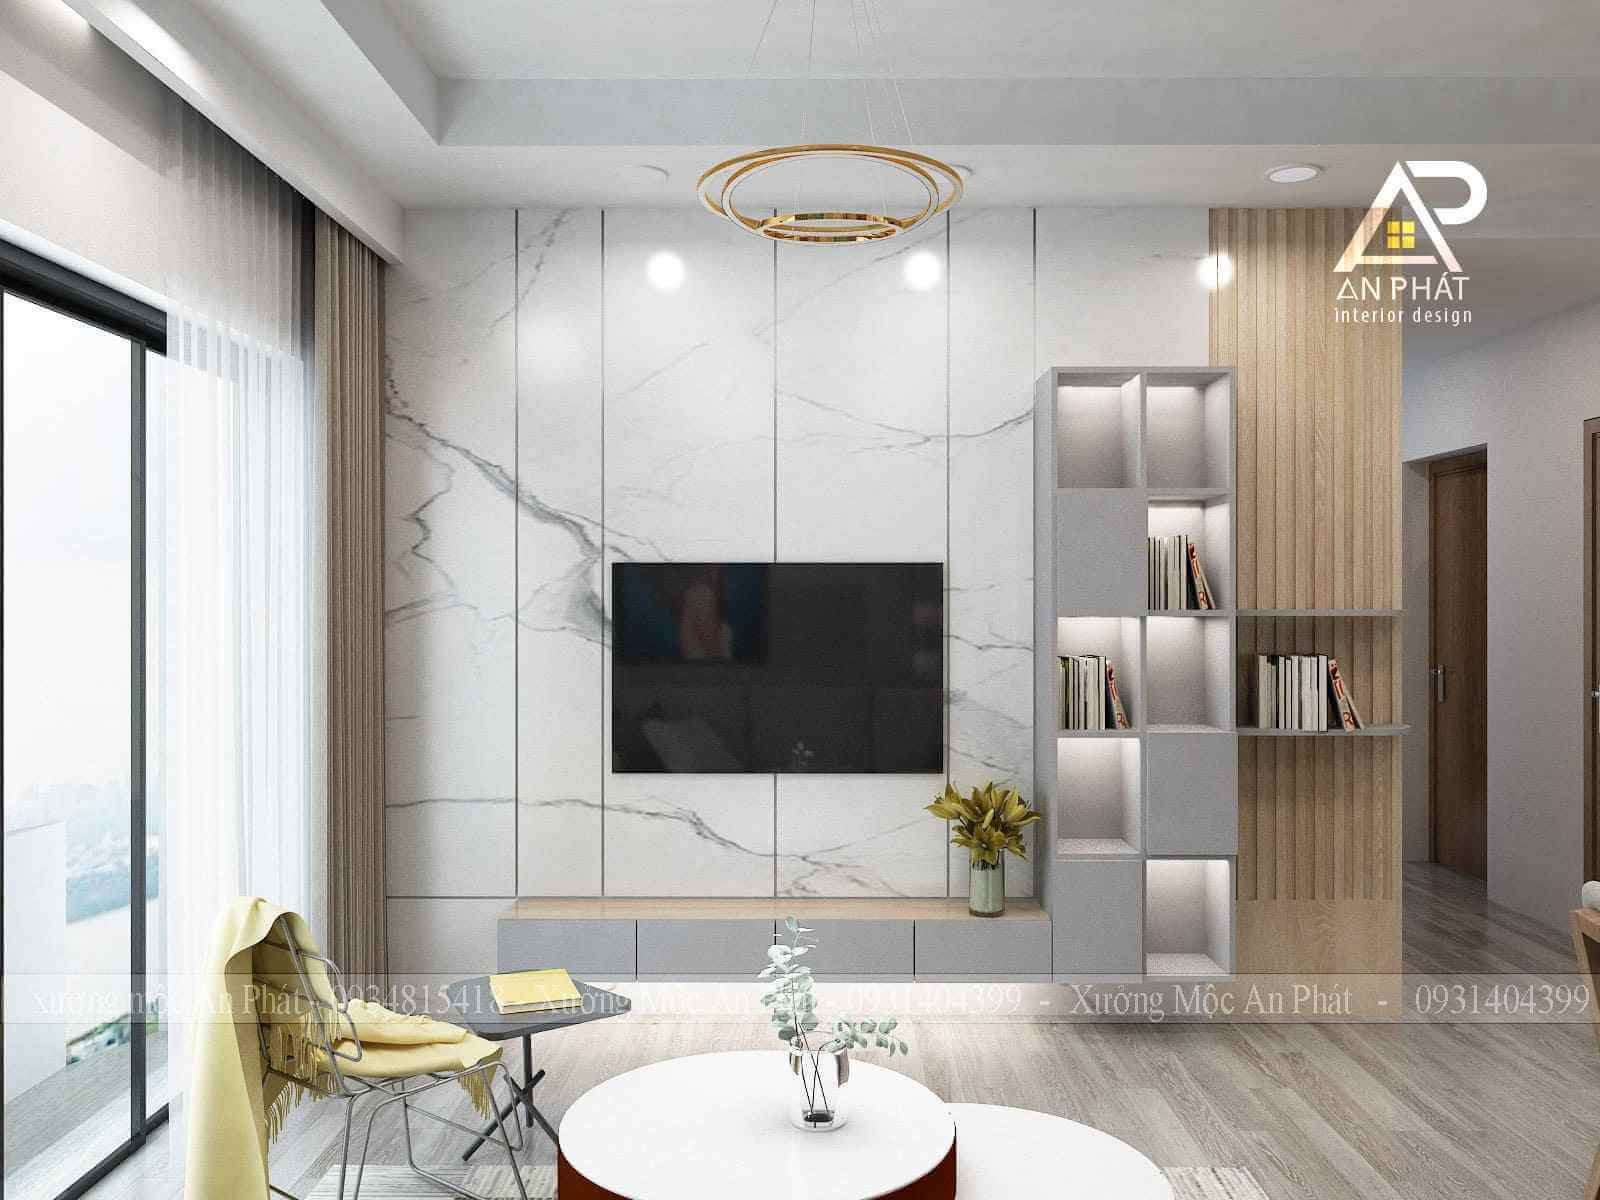 Với thiết kế nội thất căn hộ 50m2 hiện đại và thông minh, bạn sẽ không còn lo lắng về không gian chật hẹp. Những ý tưởng sáng tạo sẽ giúp căn hộ nhỏ của bạn trở nên tiện nghi và đầy đủ tiện ích.